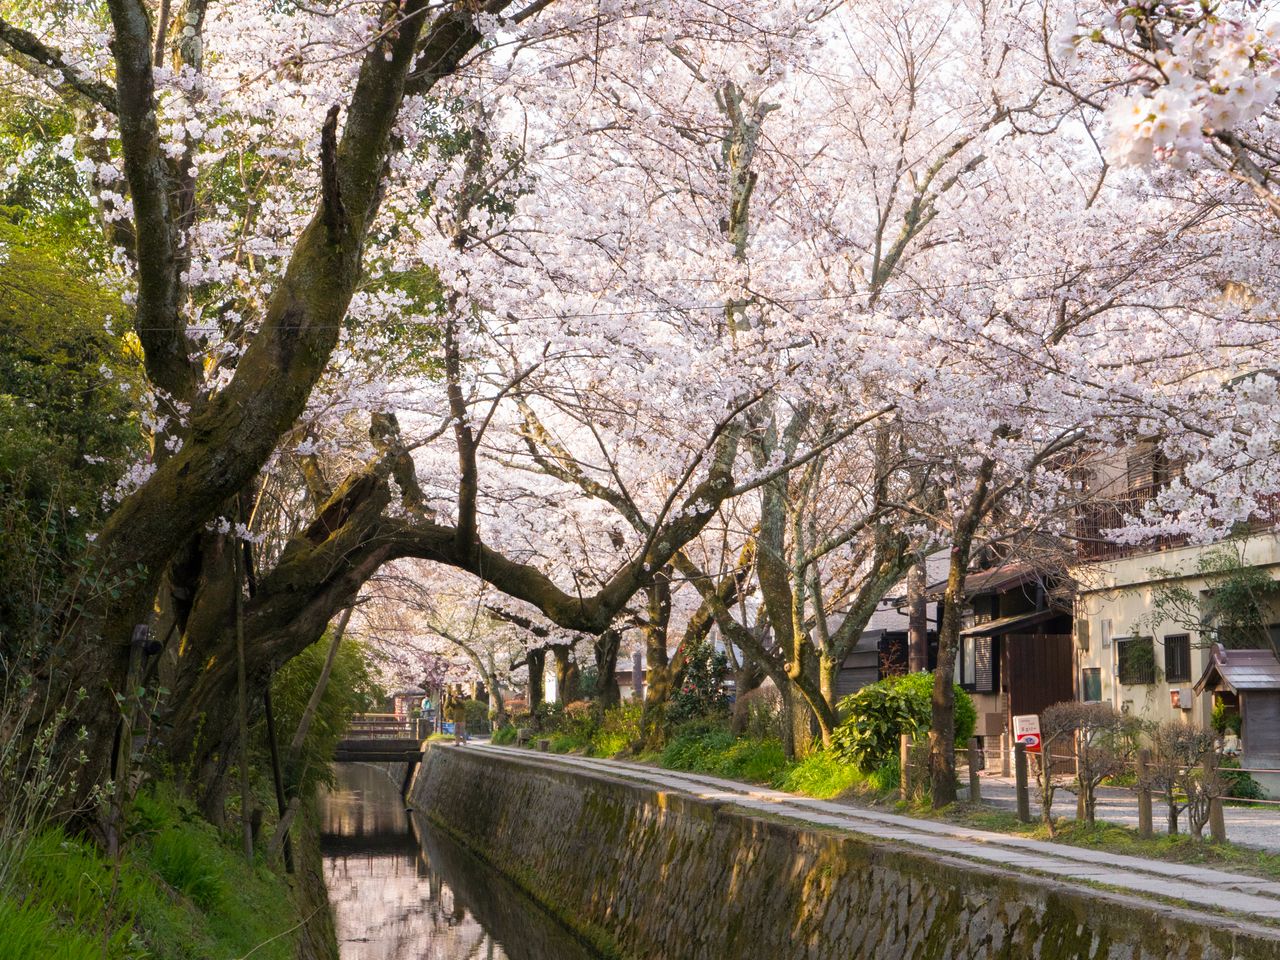 Los cerezos en flor y un pequeño puente de piedra al fondo, una composición perfecta. 